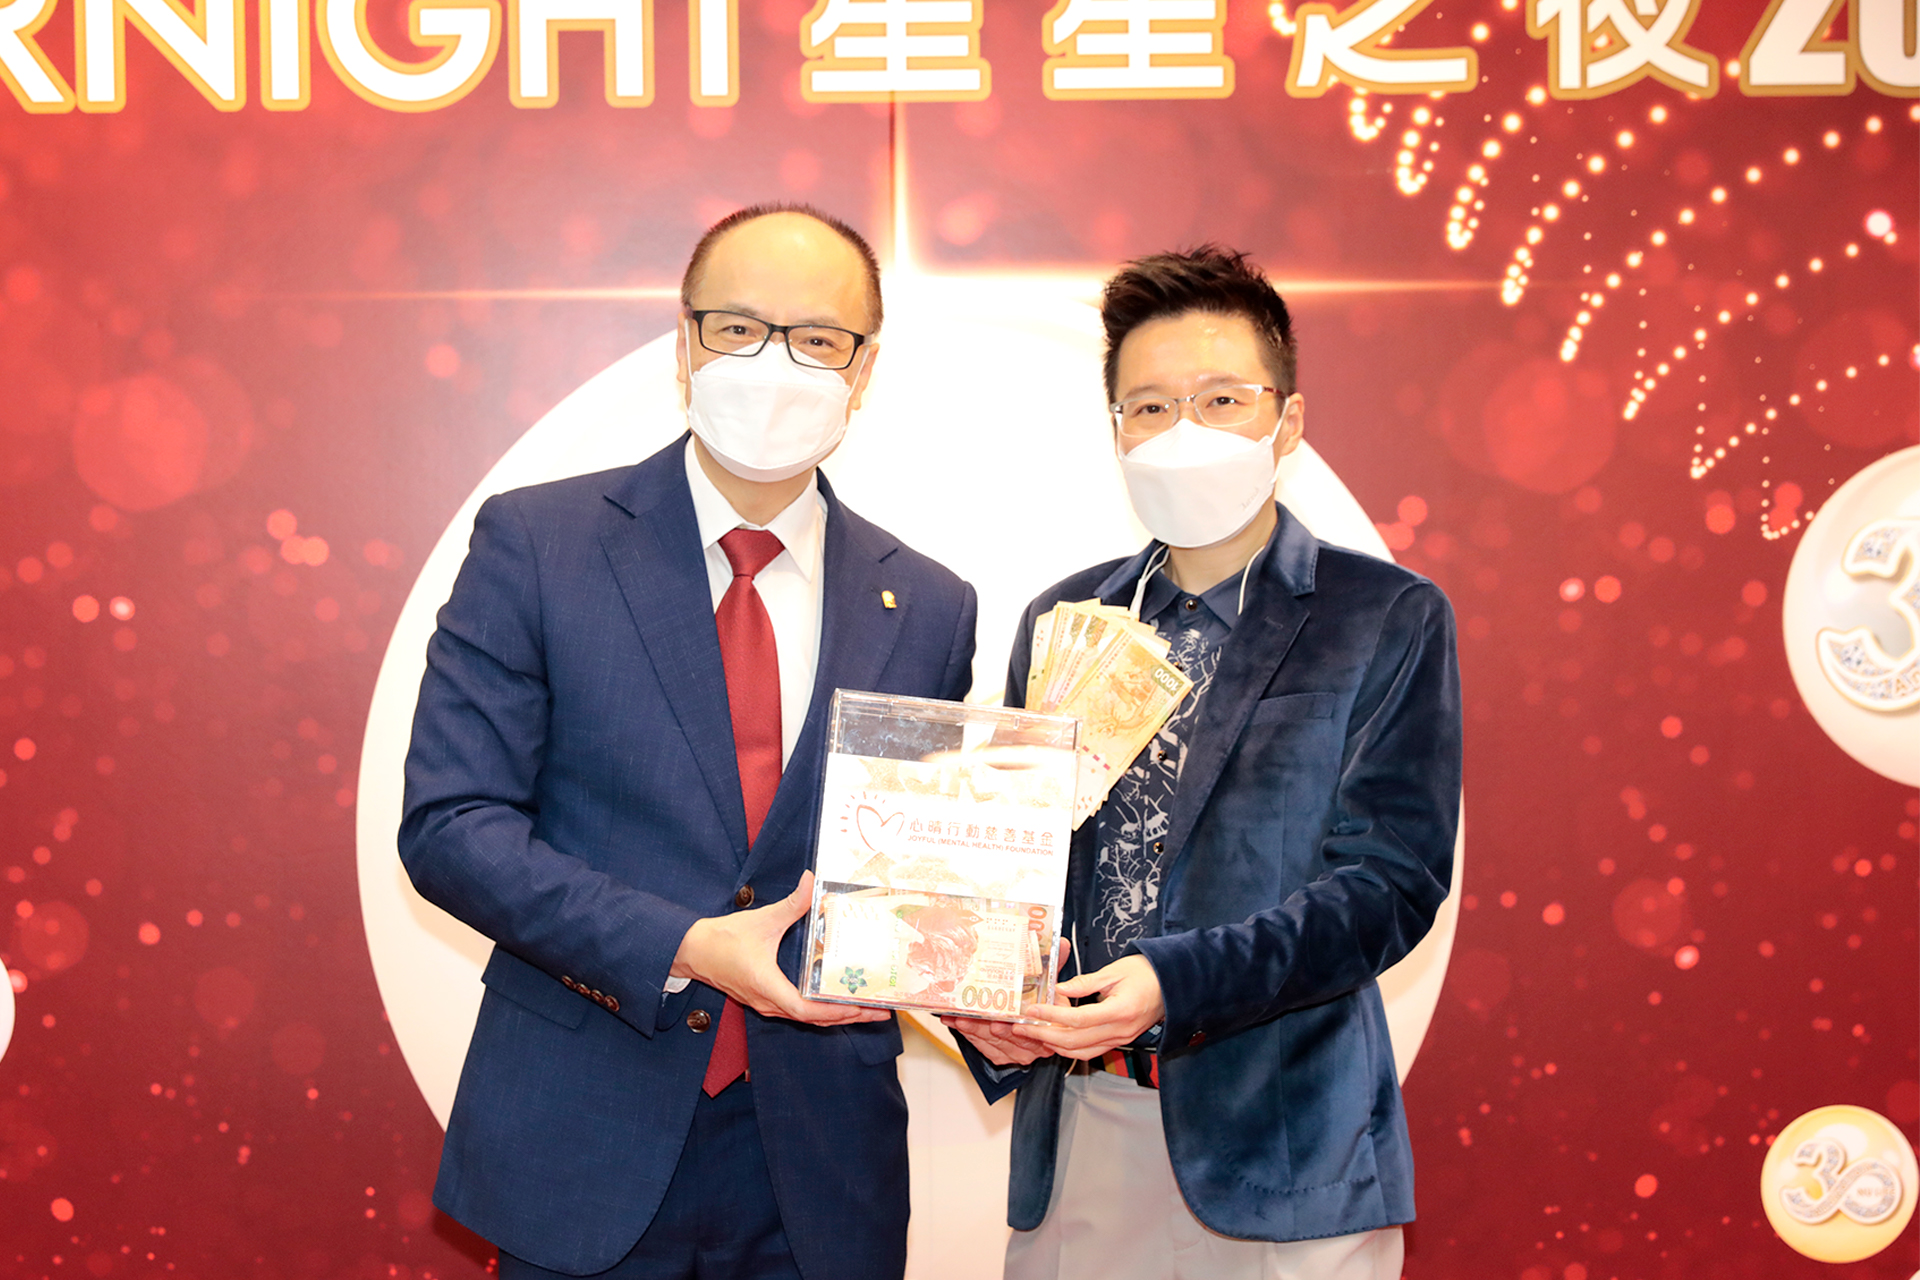 恭賀Rickey Yuen從星級百萬富翁遊戲贏取HK$10,000獎金並與公司合共捐助HK$8000予「心晴行動慈善基金」